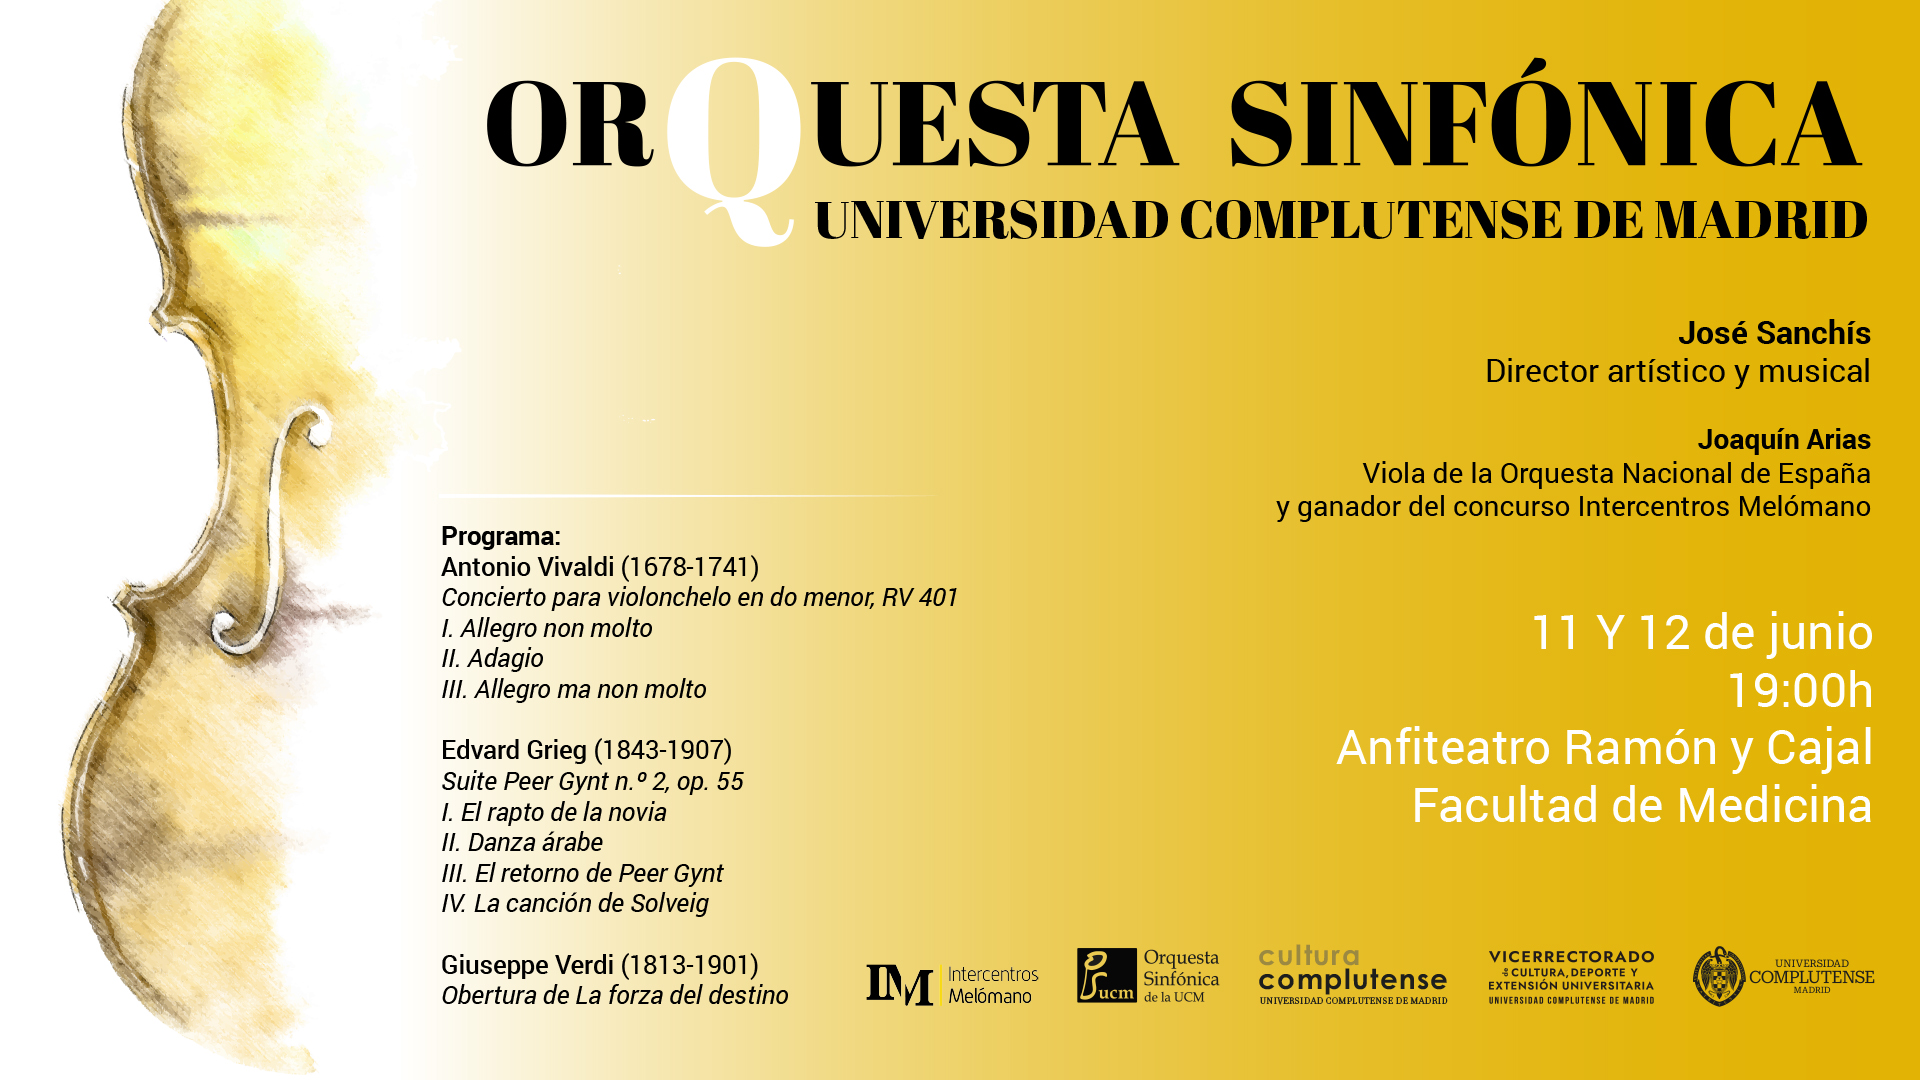 Orquesta Sinfónica de la Universidad Complutense de Madrid